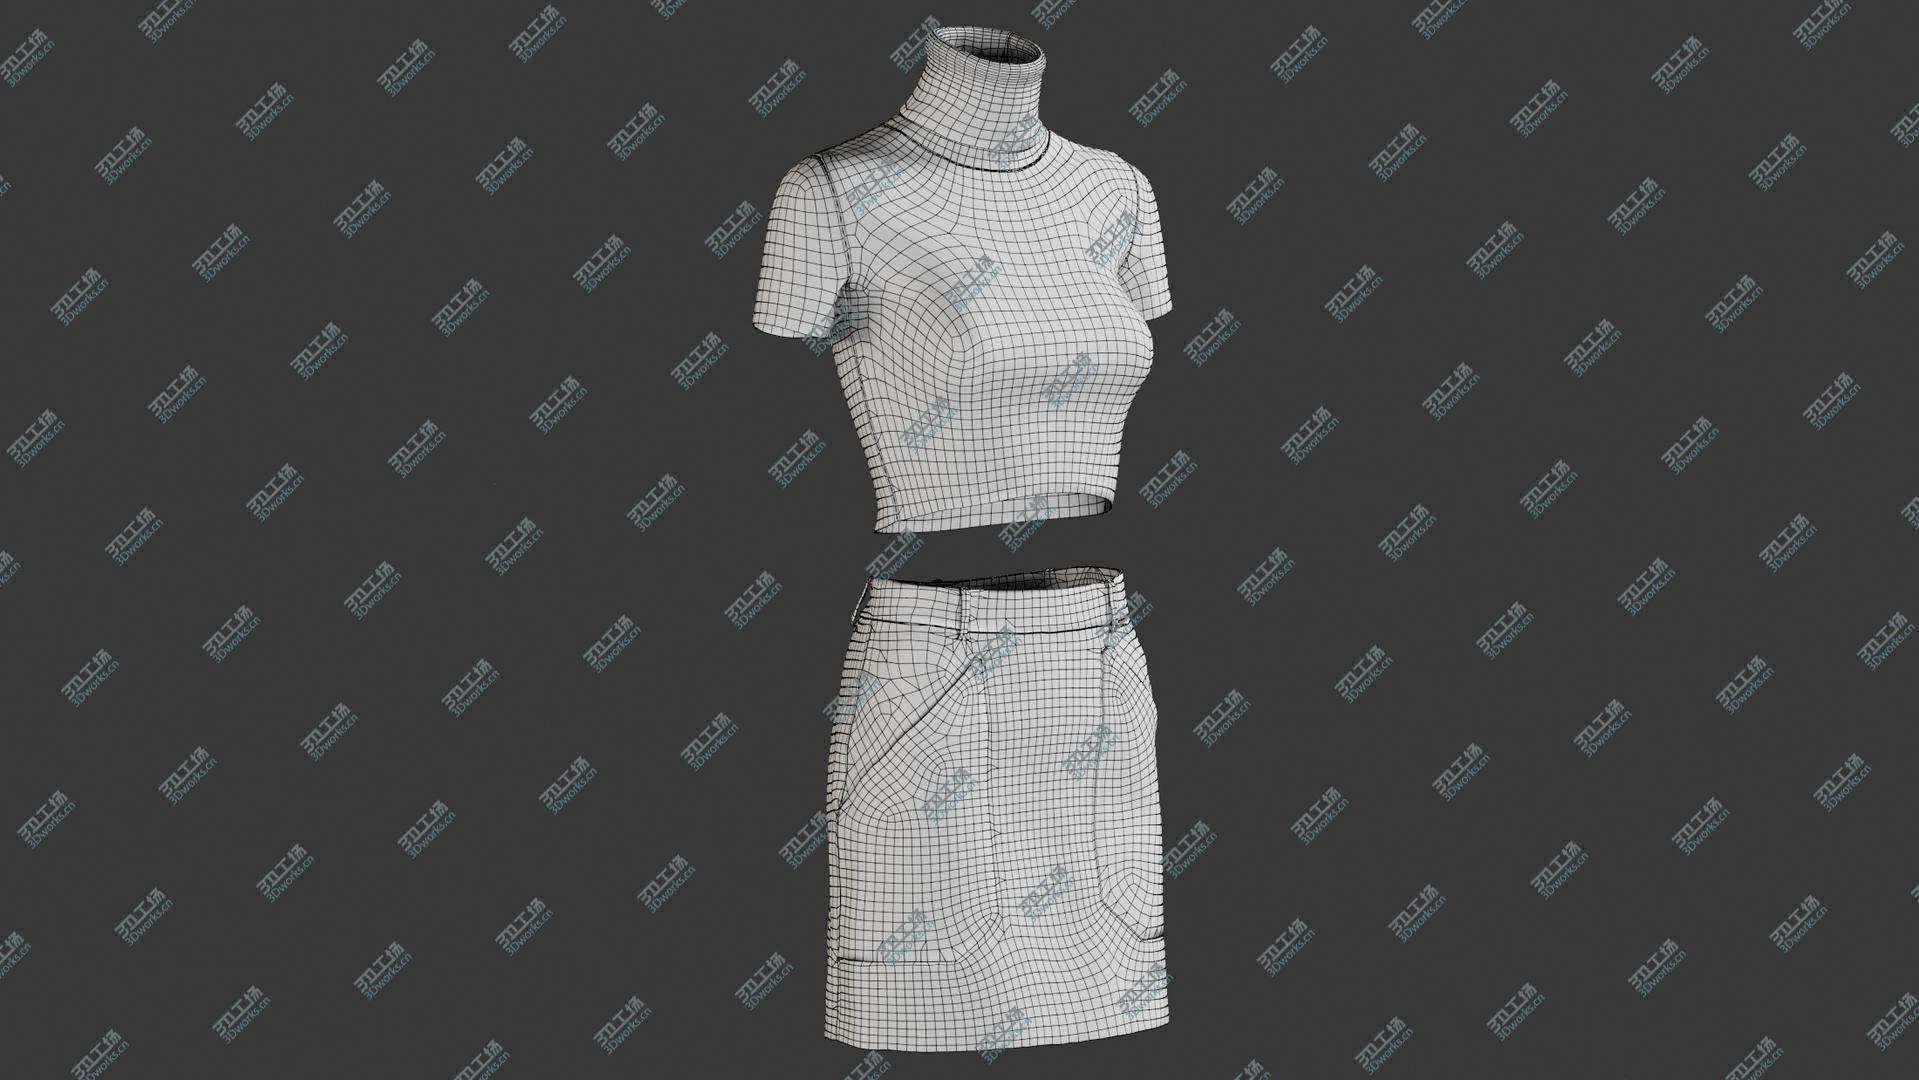 images/goods_img/202104091/Women's Skirt with TShirt 1 3D model/3.jpg